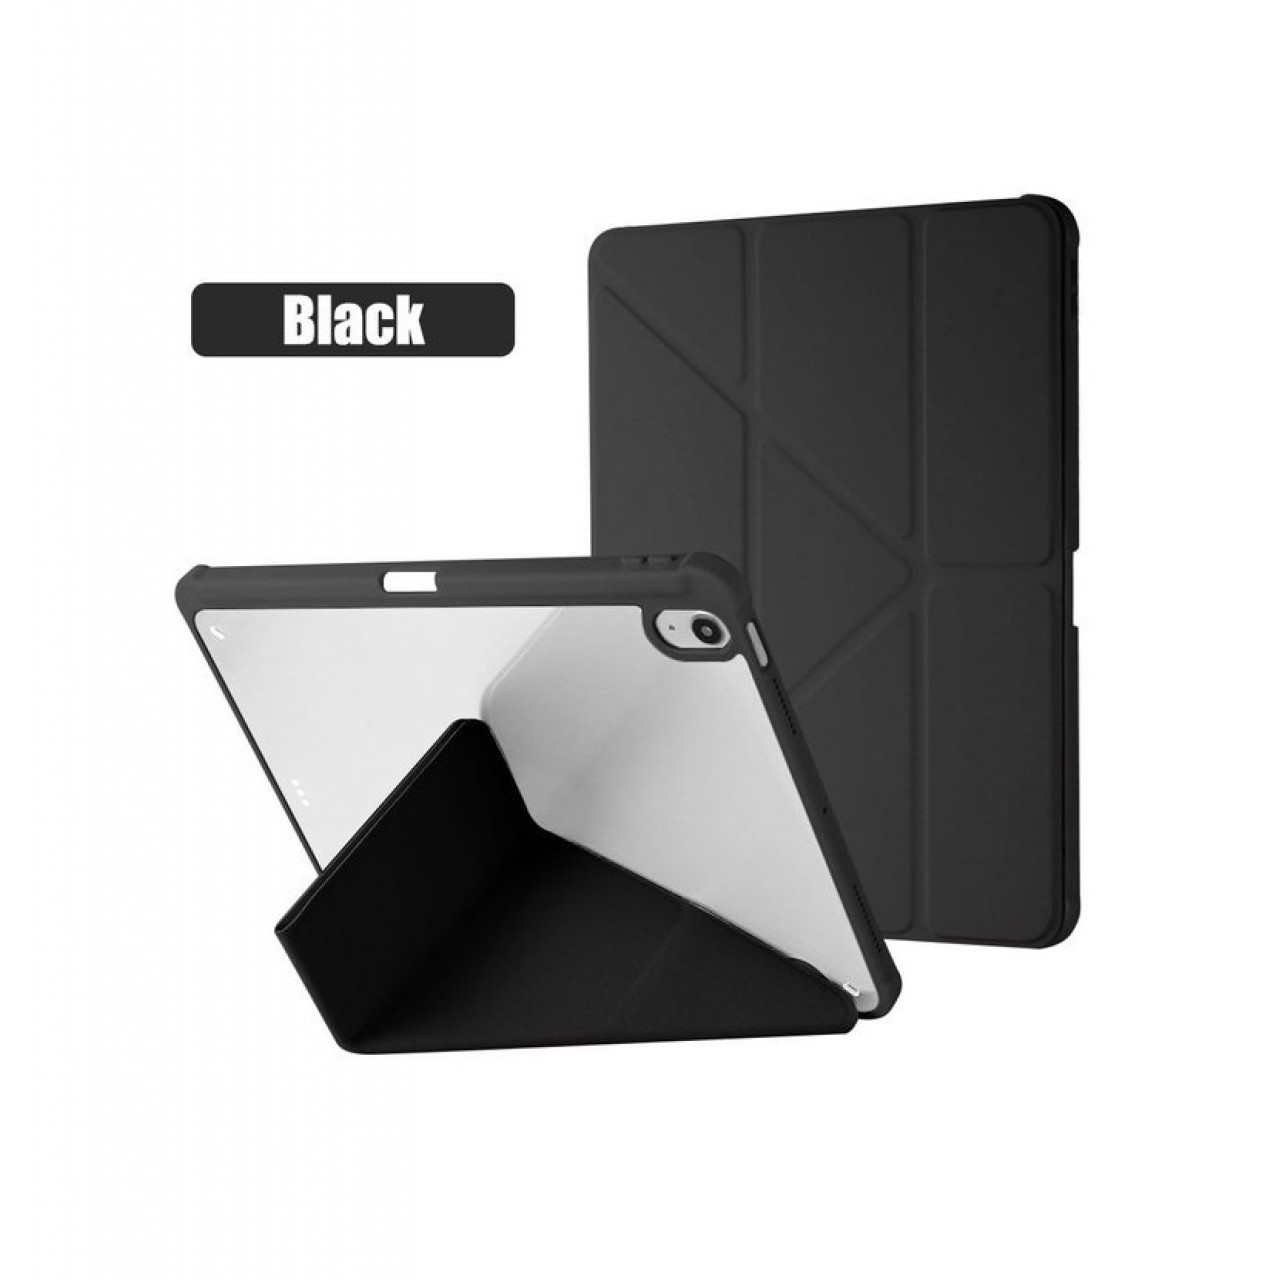 Θήκη Τάμπλετ Μαγνητική Apple iPad pro 12.9 inch 18-20-21-22 με Προστασία Κάμερας και Θέση για Γραφίδα - Black